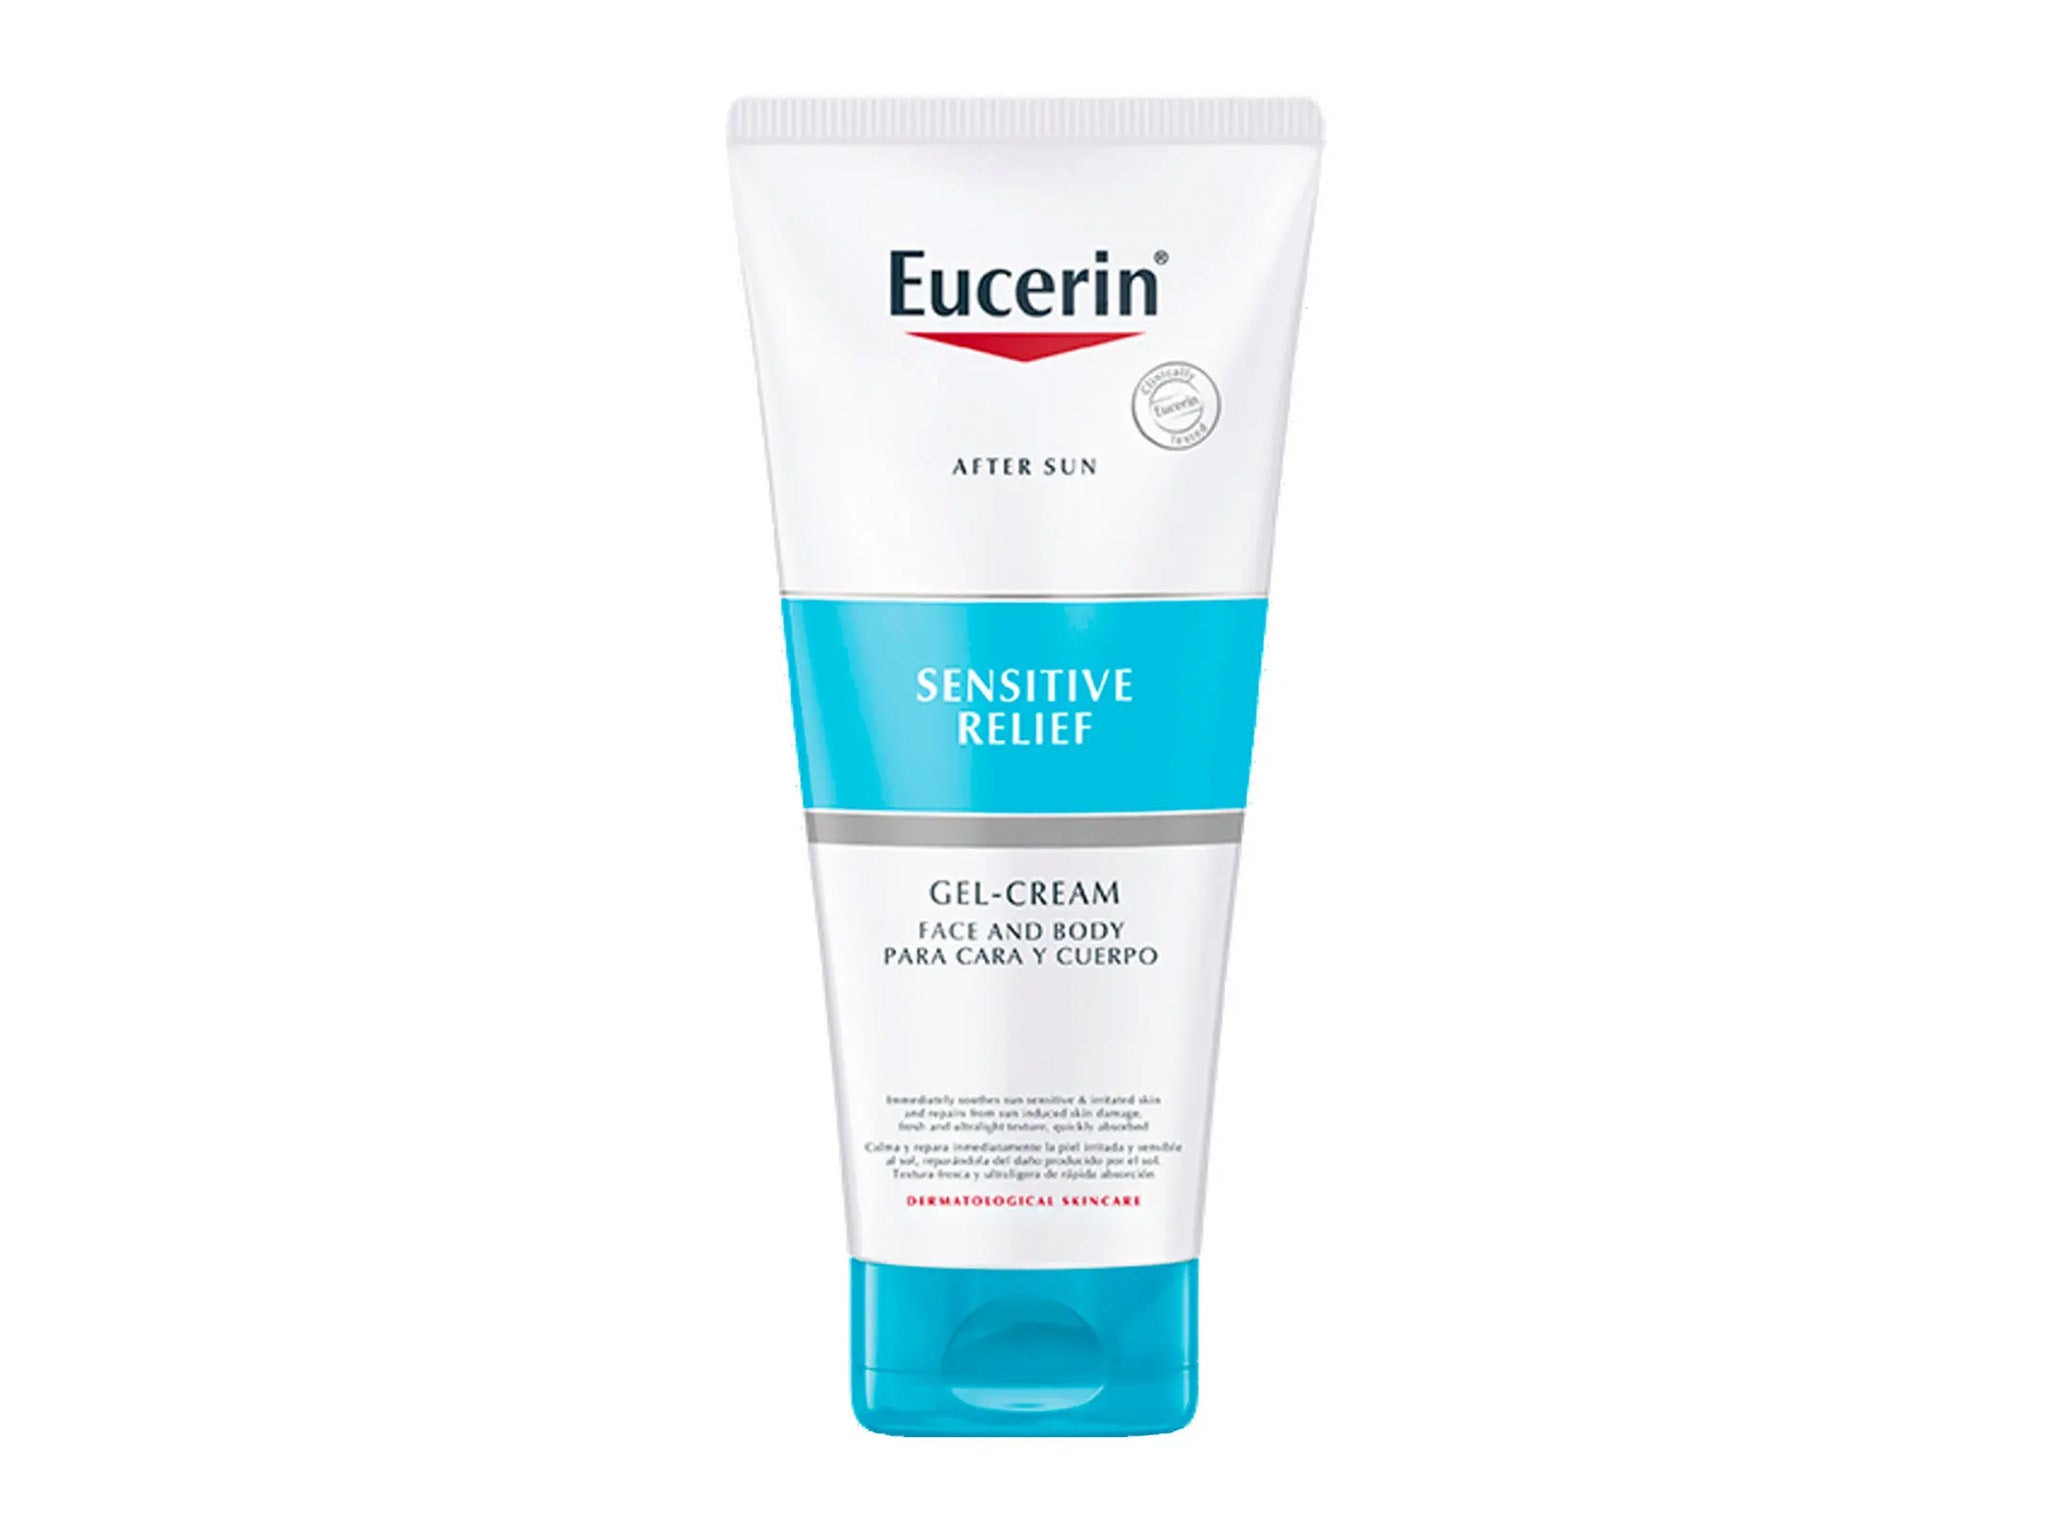 Eucerin after sun sensitive relief gel-cream 200ml